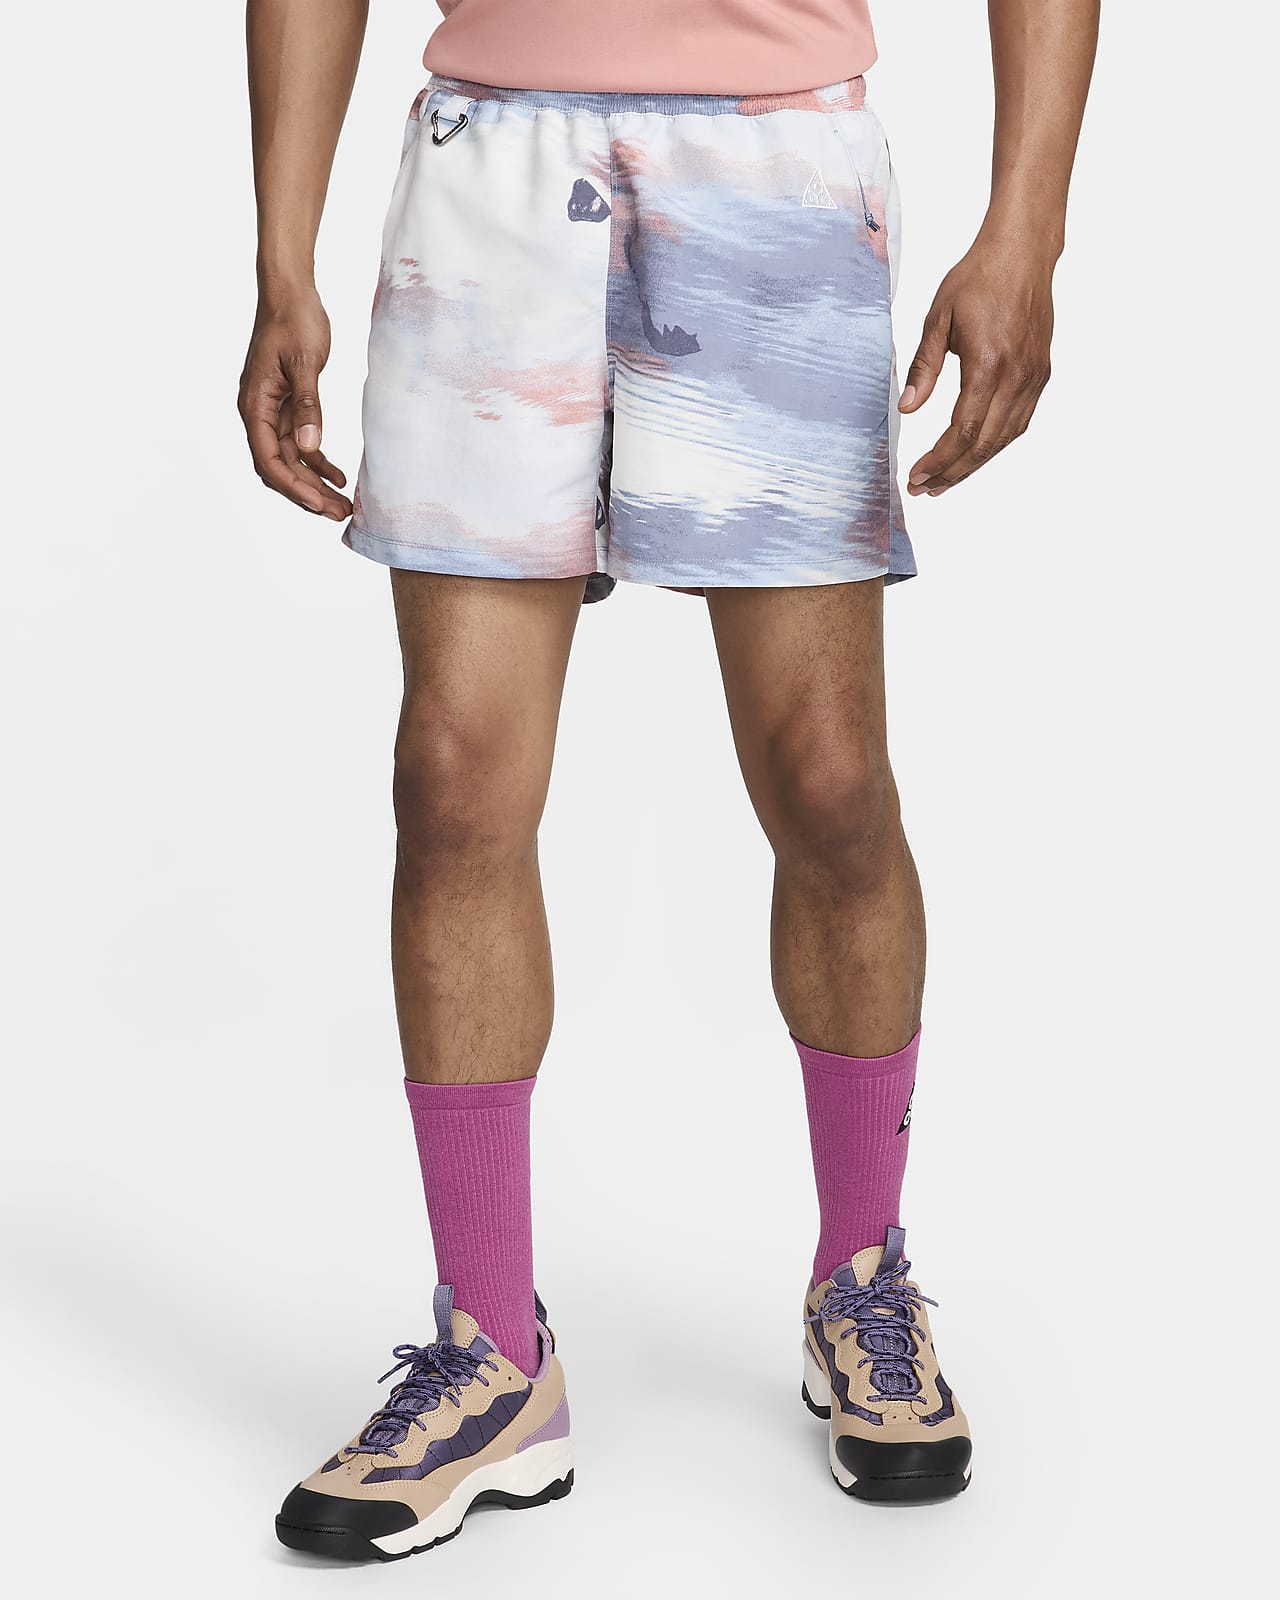 Nike ACG "Reservoir Goat" Pantalons curts amb estampat per tota la peça - Home